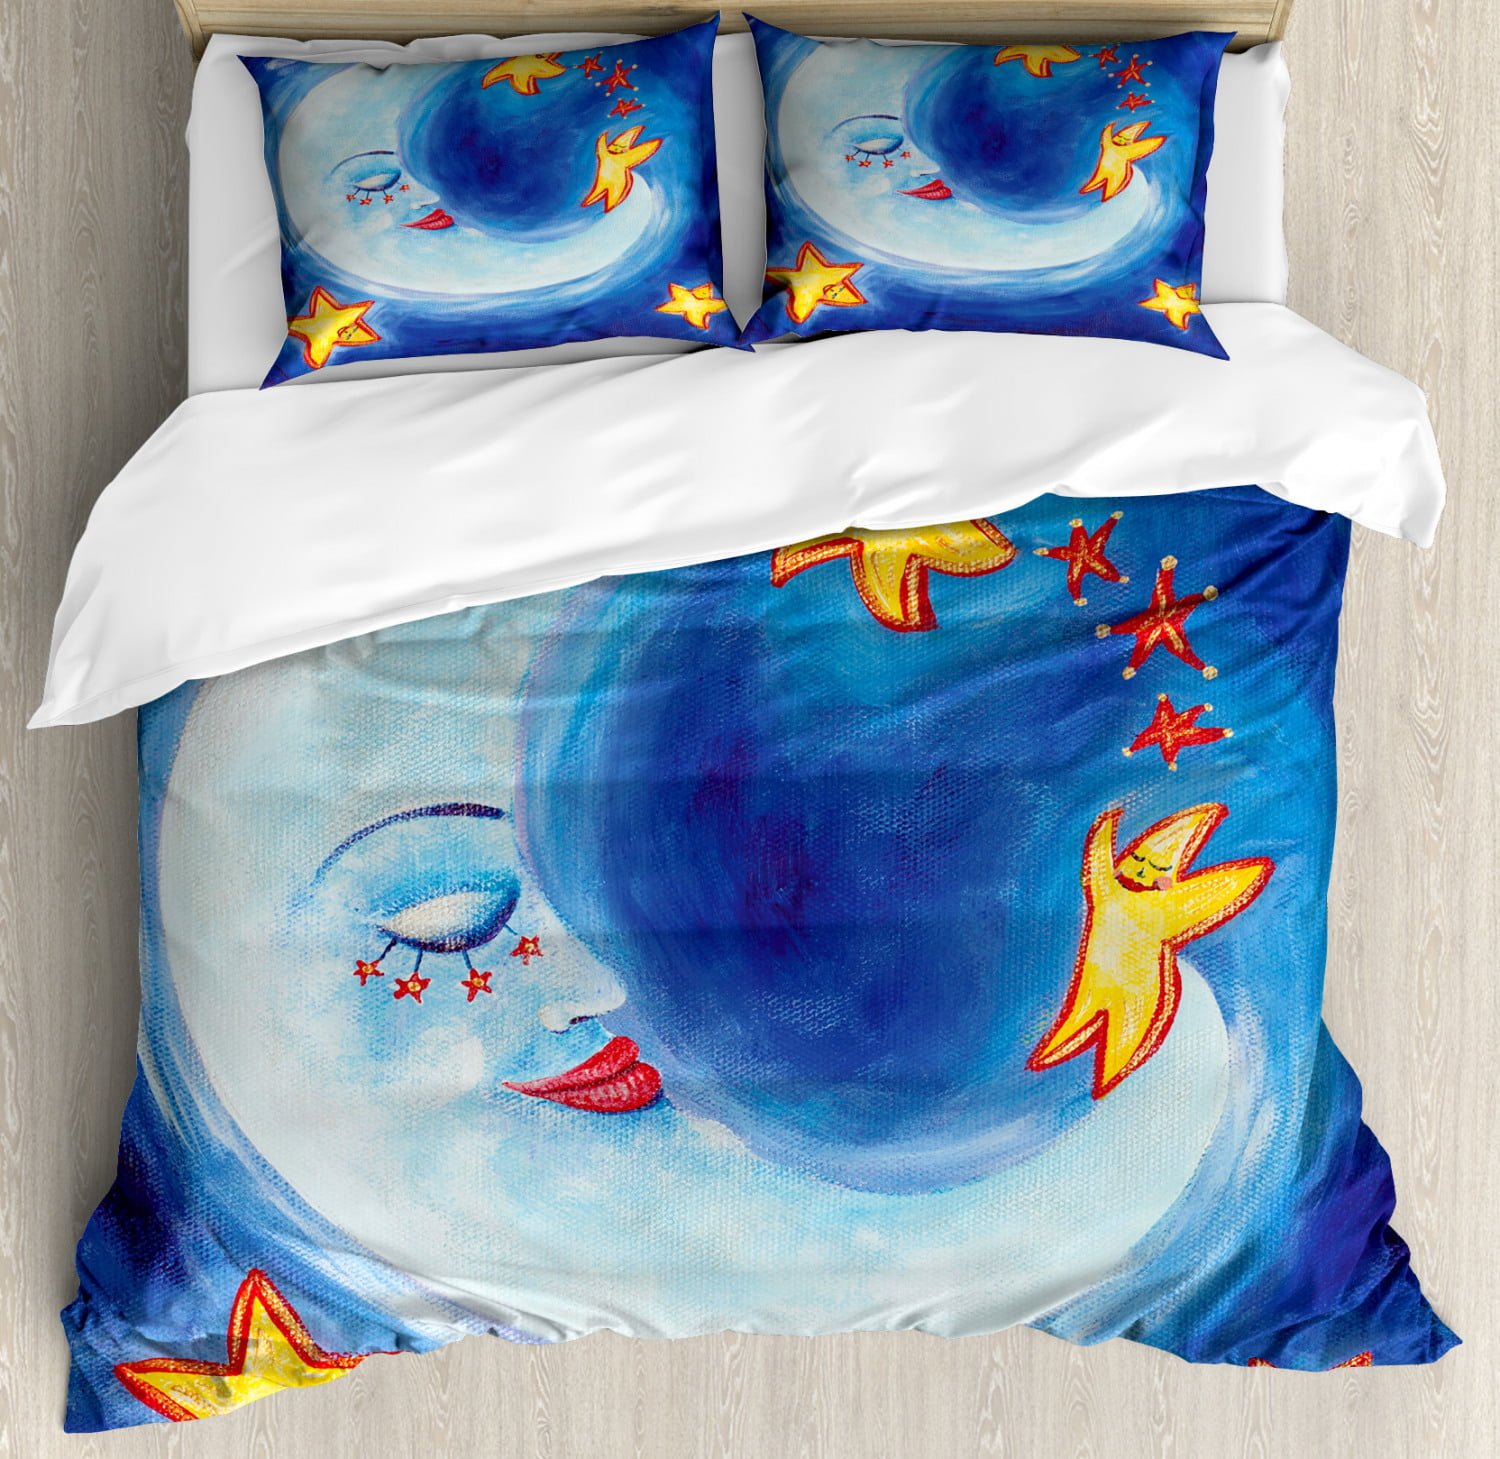 Sleepymoon Bedding Comforter Set Pinch Pleat Navy, Queen